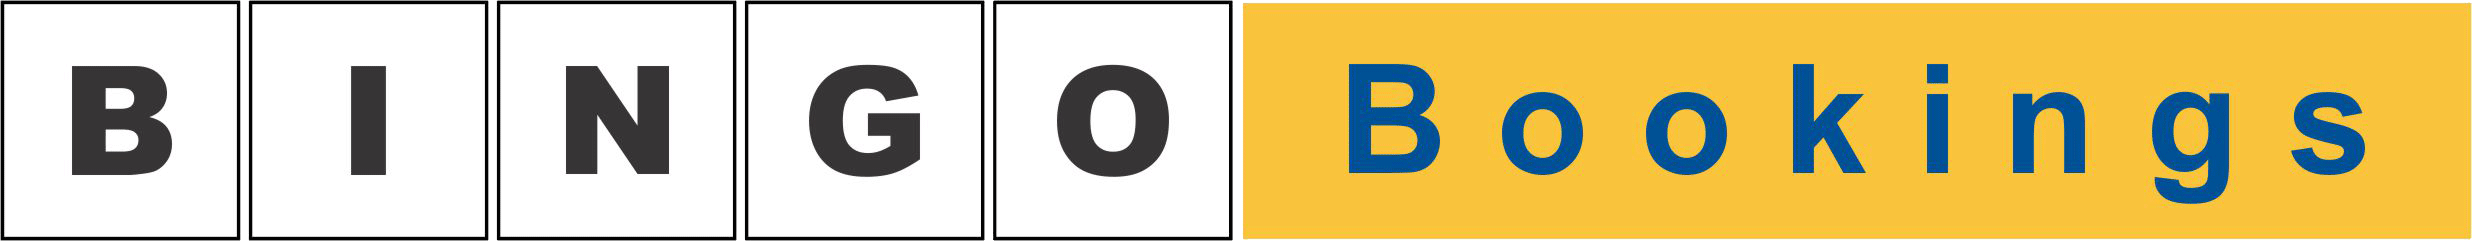 logotip-bingobookings